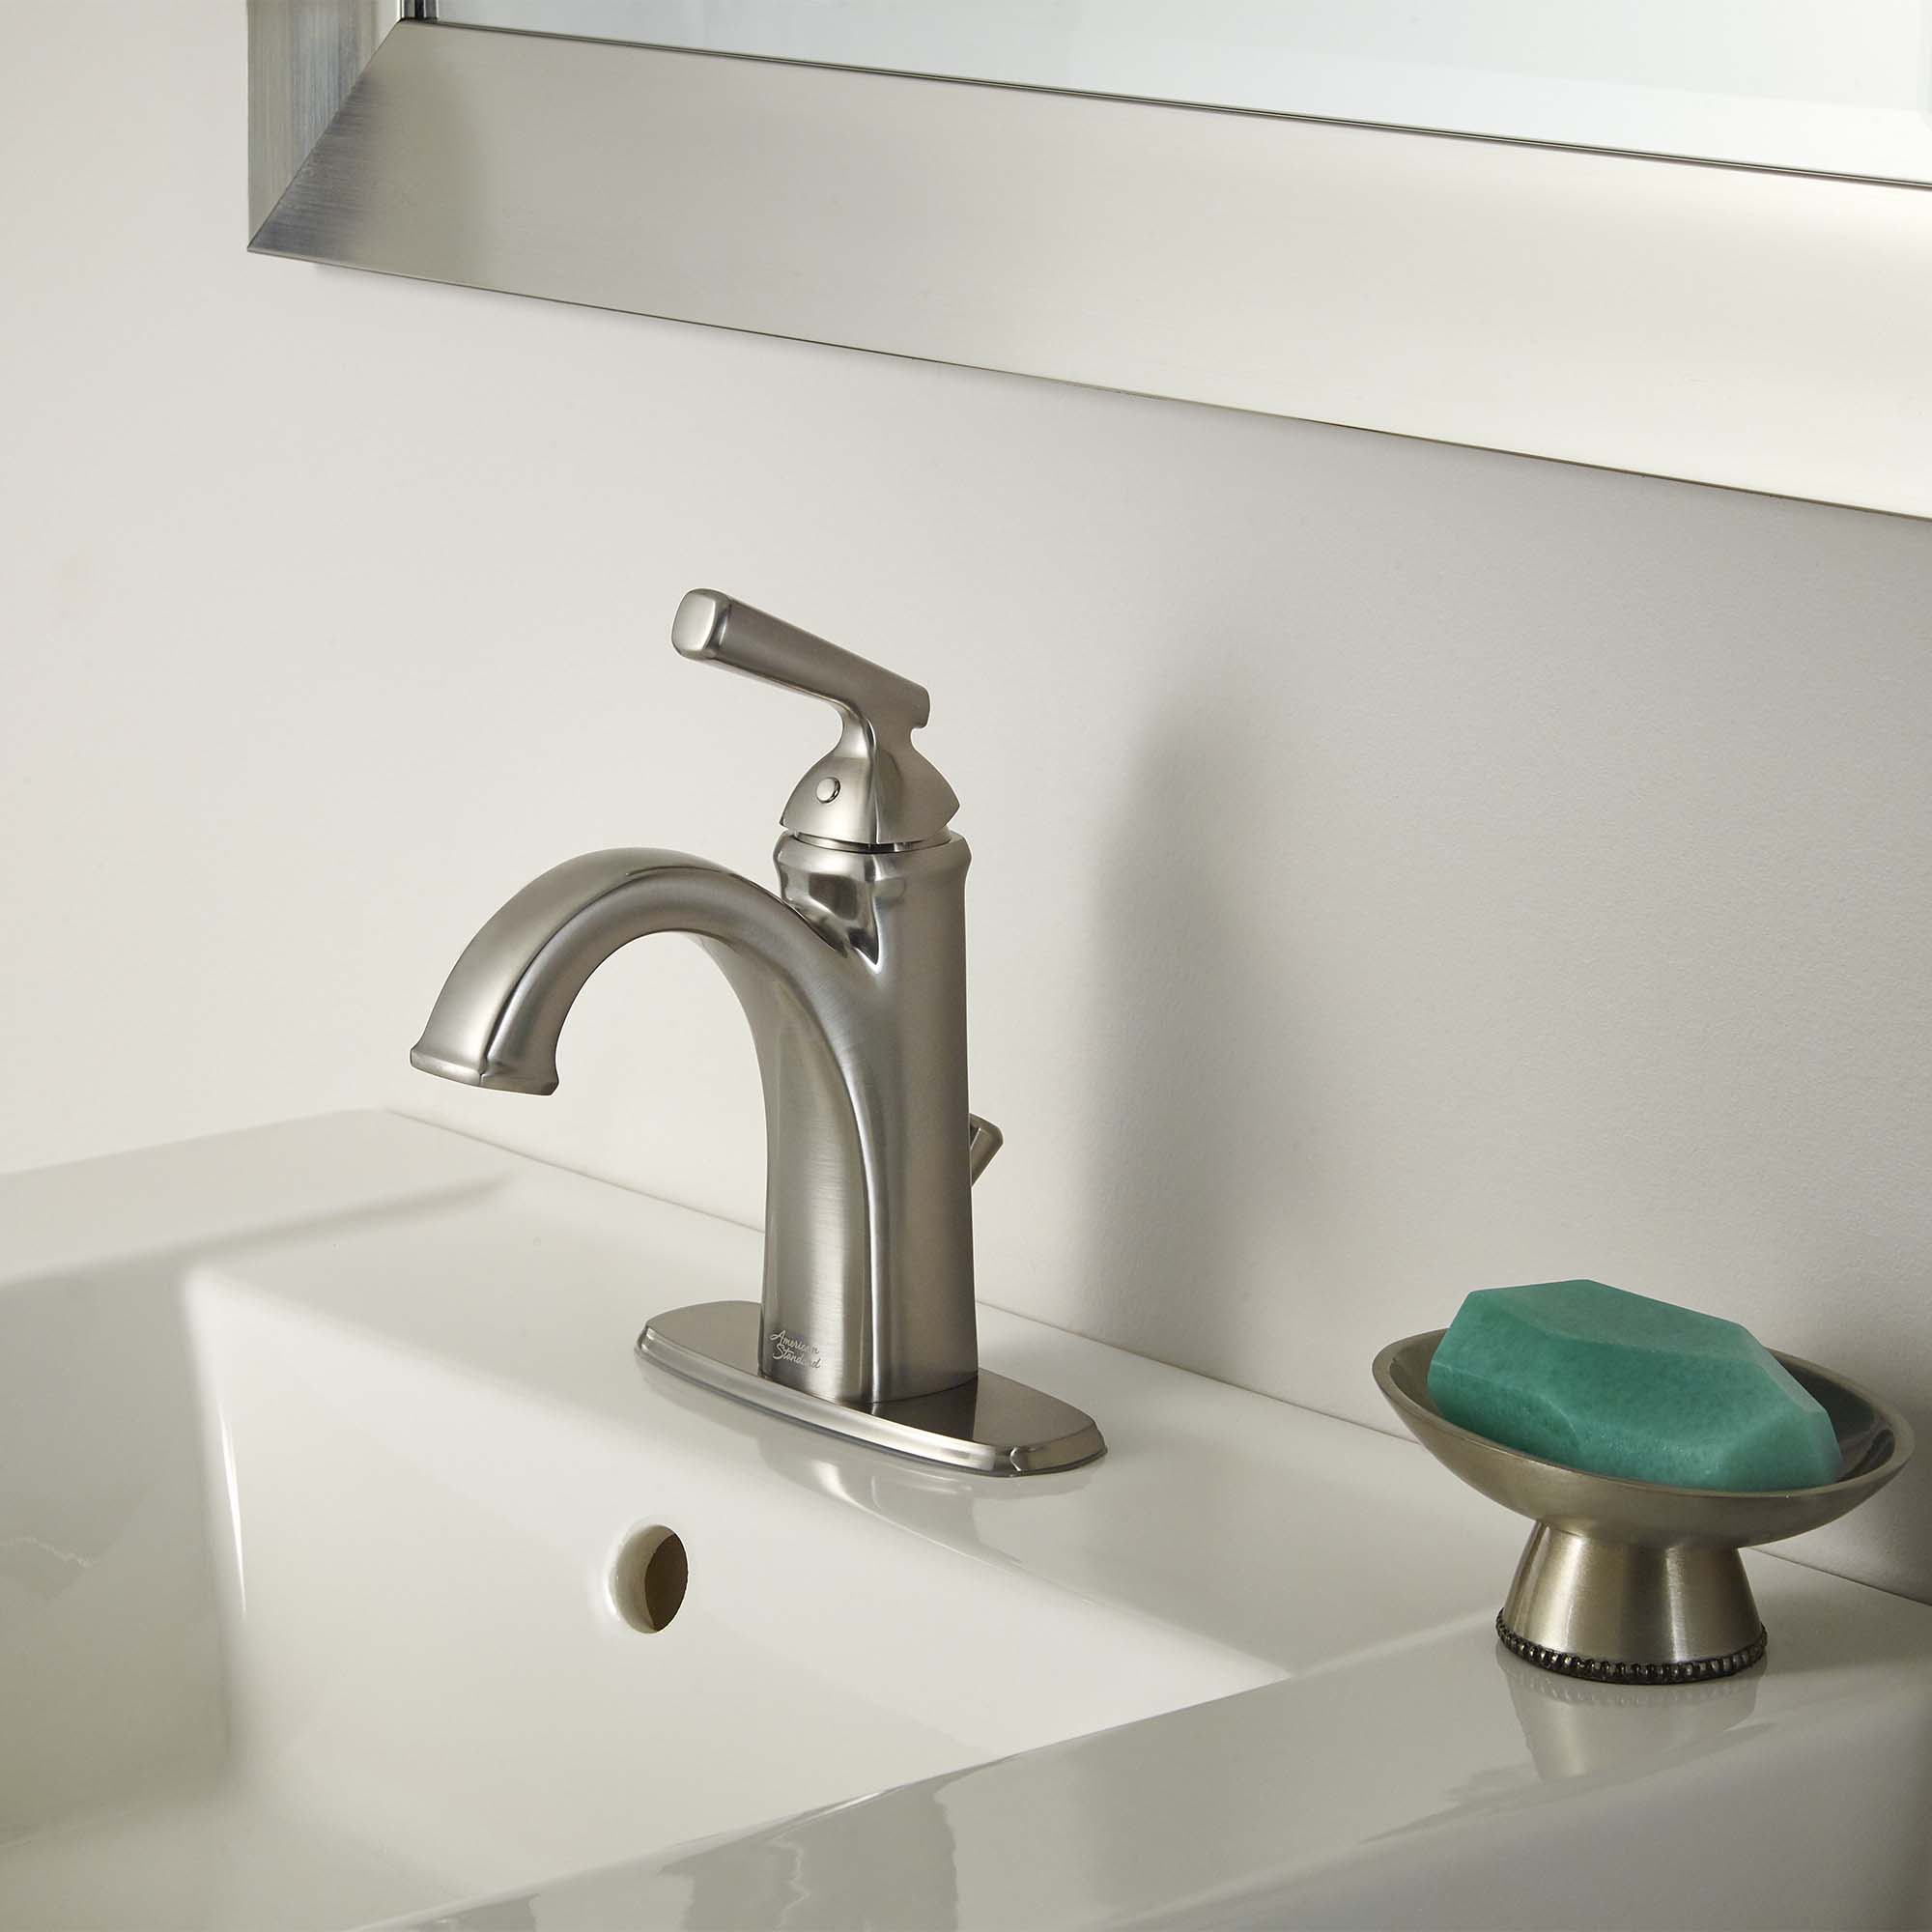 Kirkdale 1-Handle Monoblock Bathroom Sink Faucet